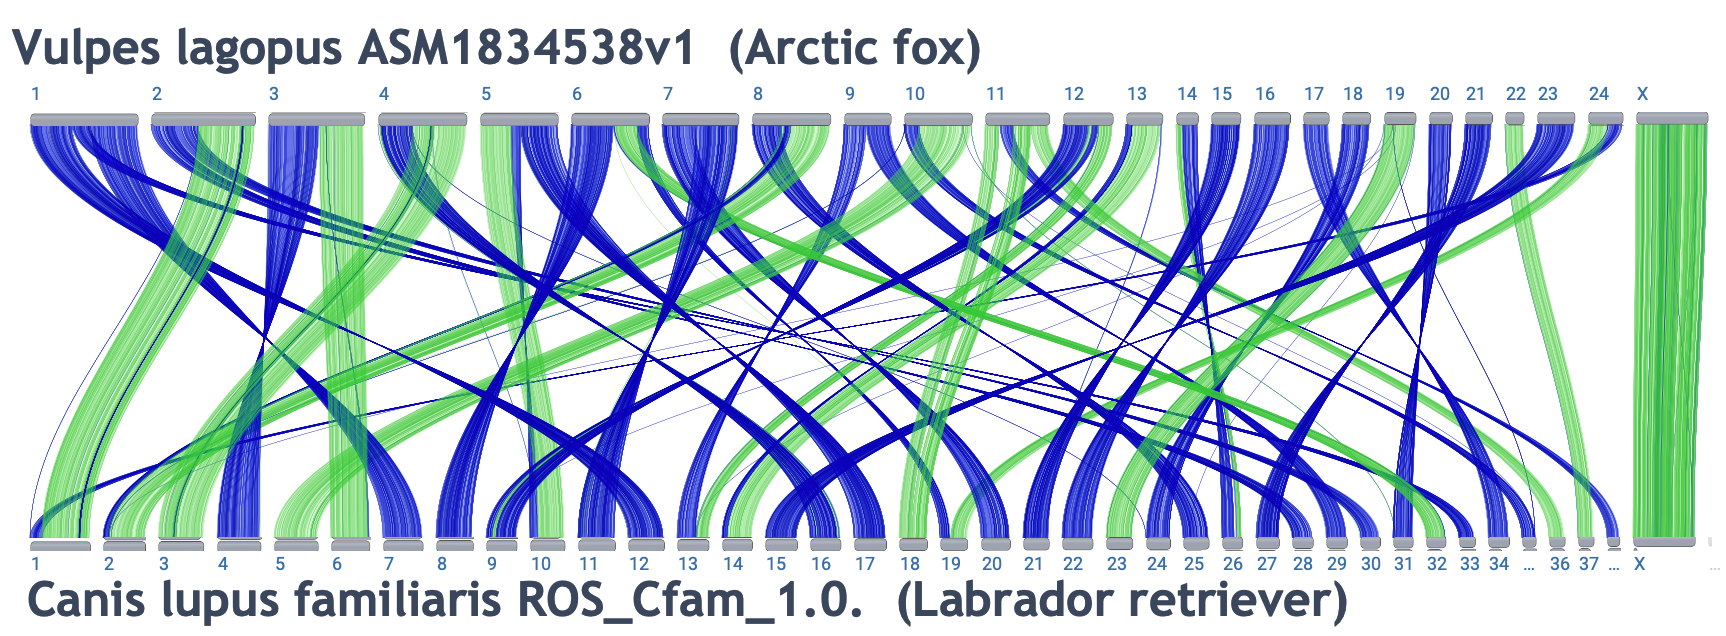 Ideogram view of arctic fox and labrador retriever